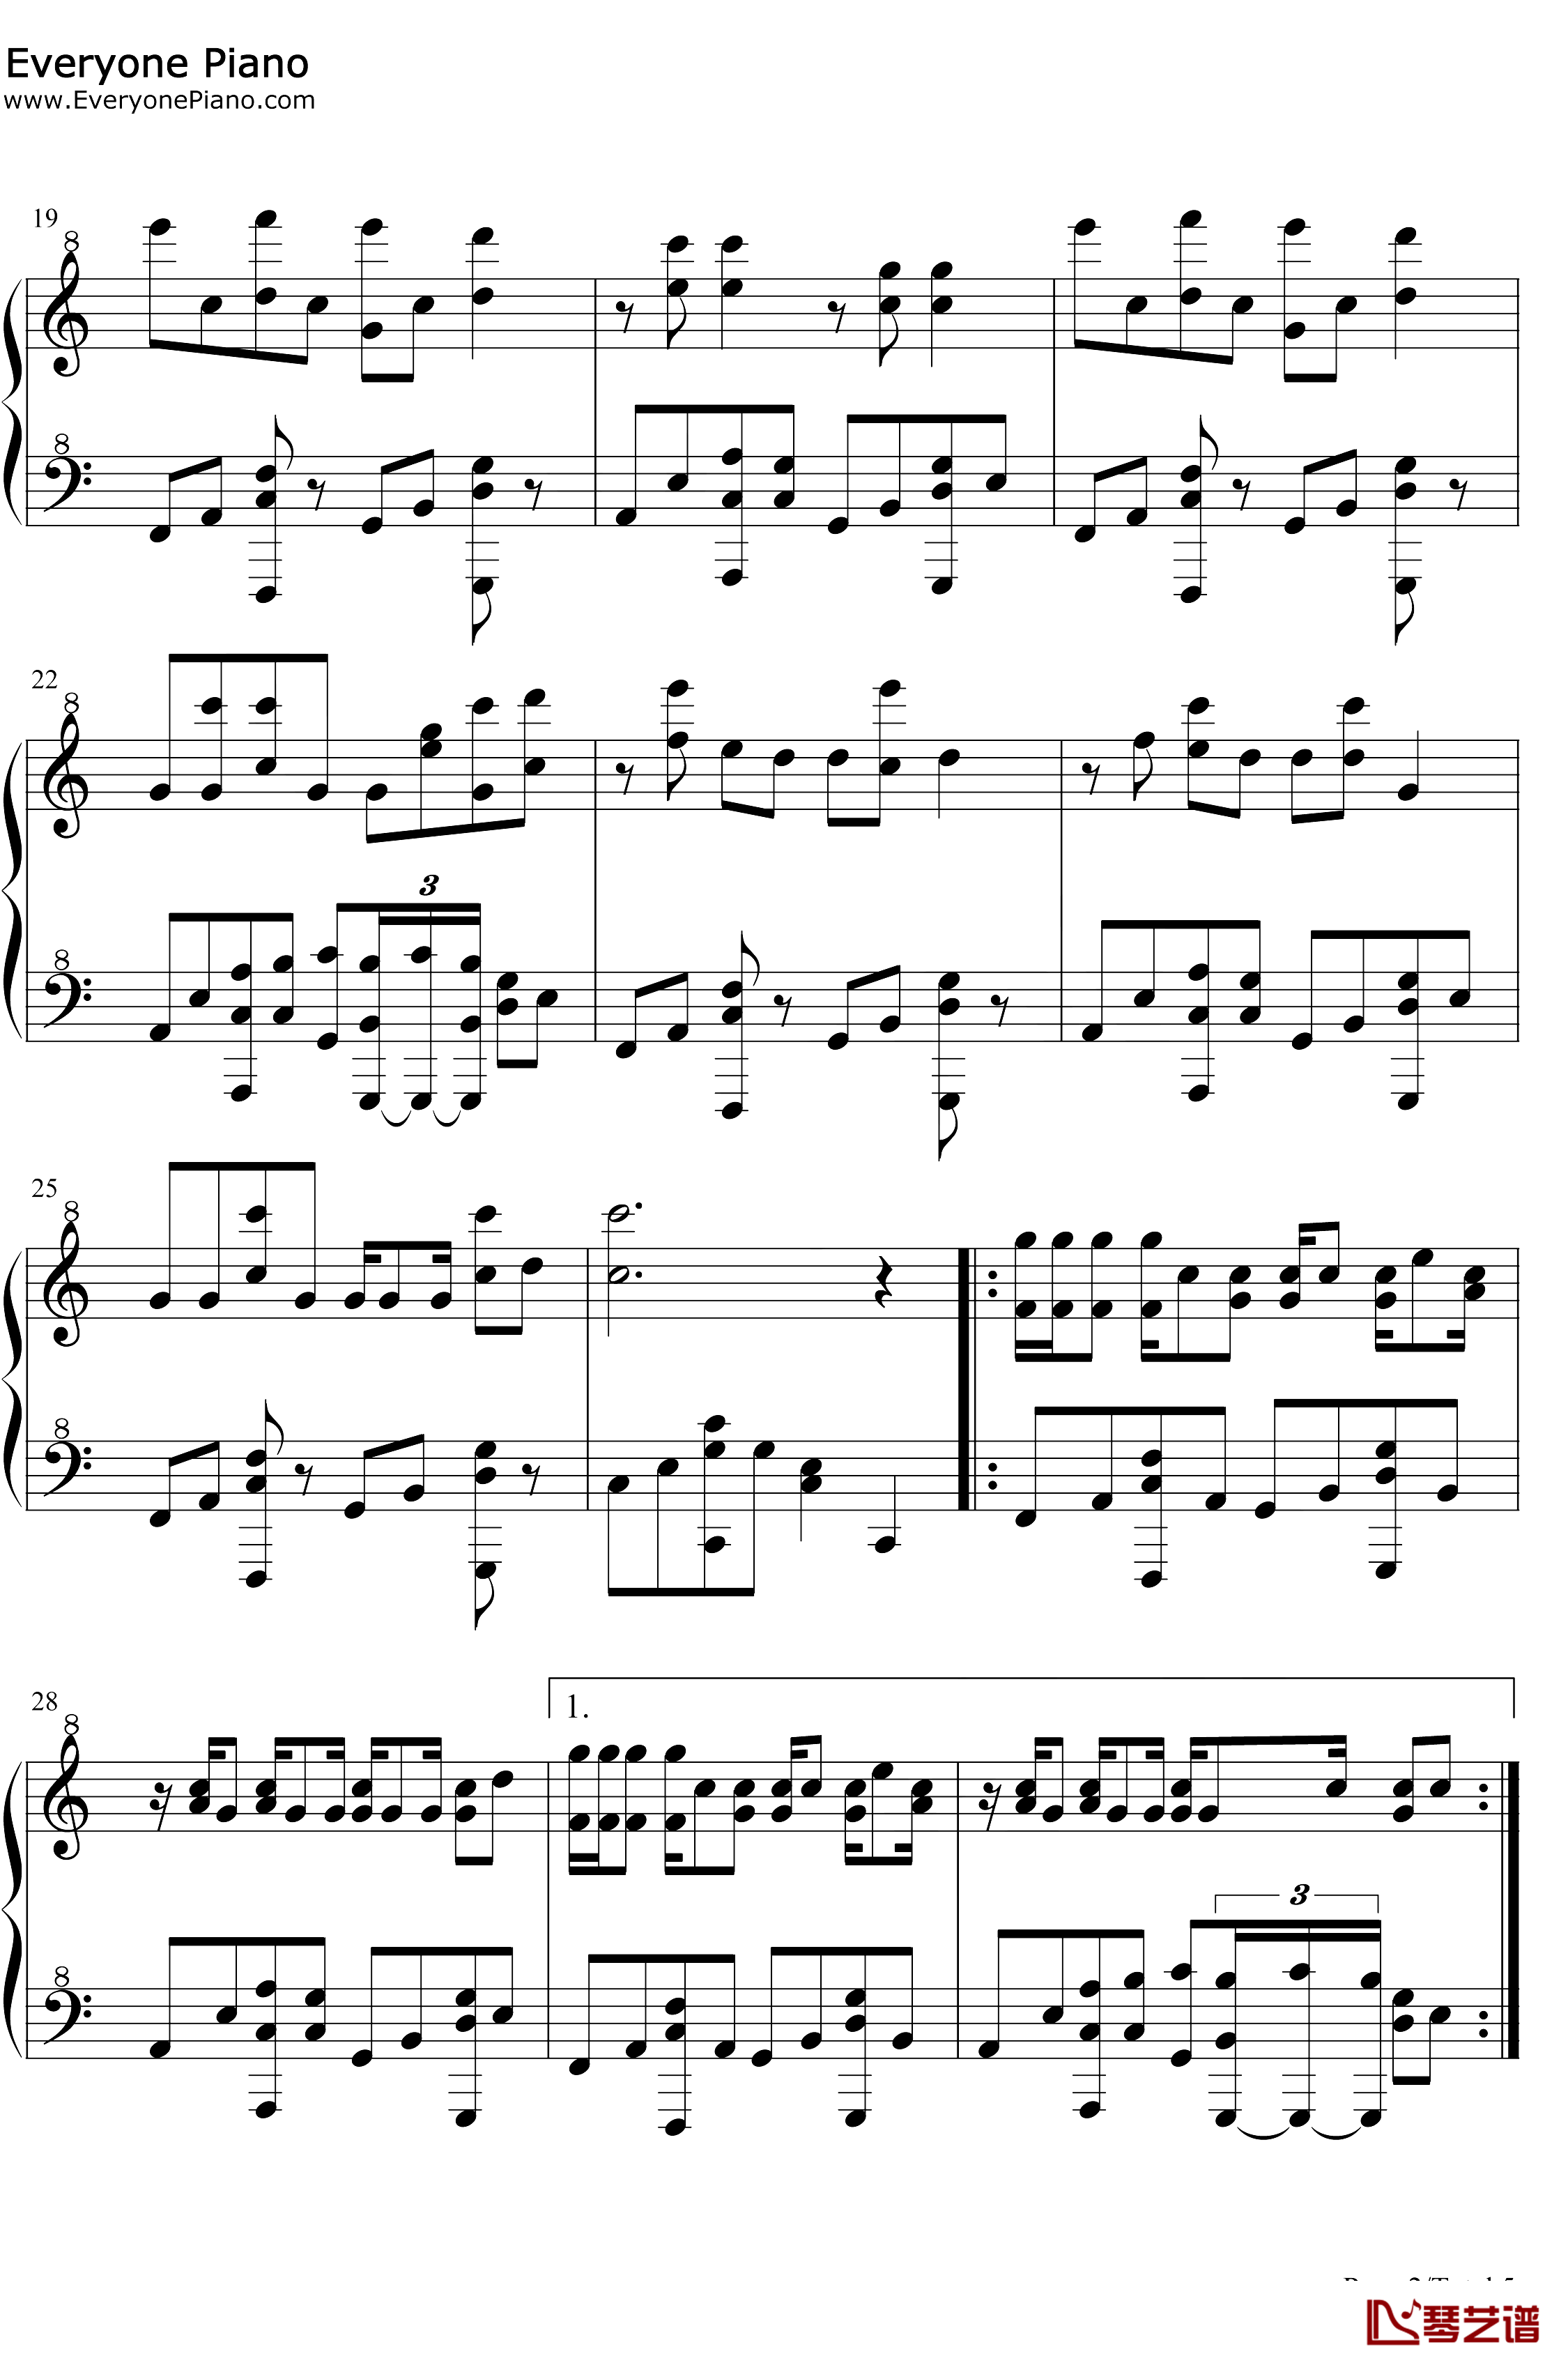 星茶会钢琴谱-灰澈-轻快的钢琴RB曲2